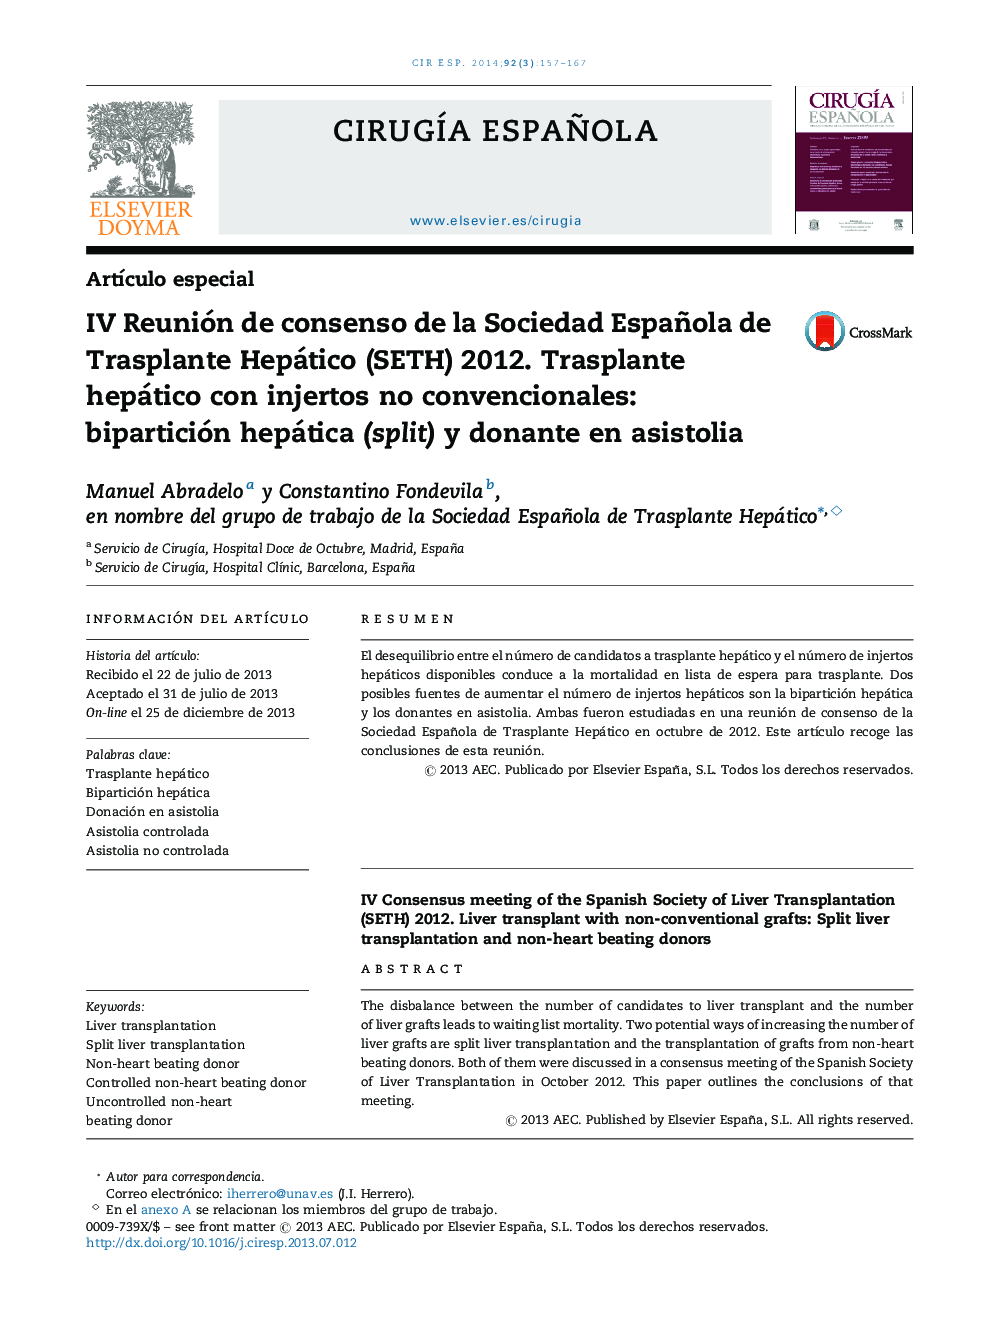 IV Reunión de consenso de la Sociedad Española de Trasplante Hepático (SETH) 2012. Trasplante hepático con injertos no convencionales: bipartición hepática (split) y donante en asistolia